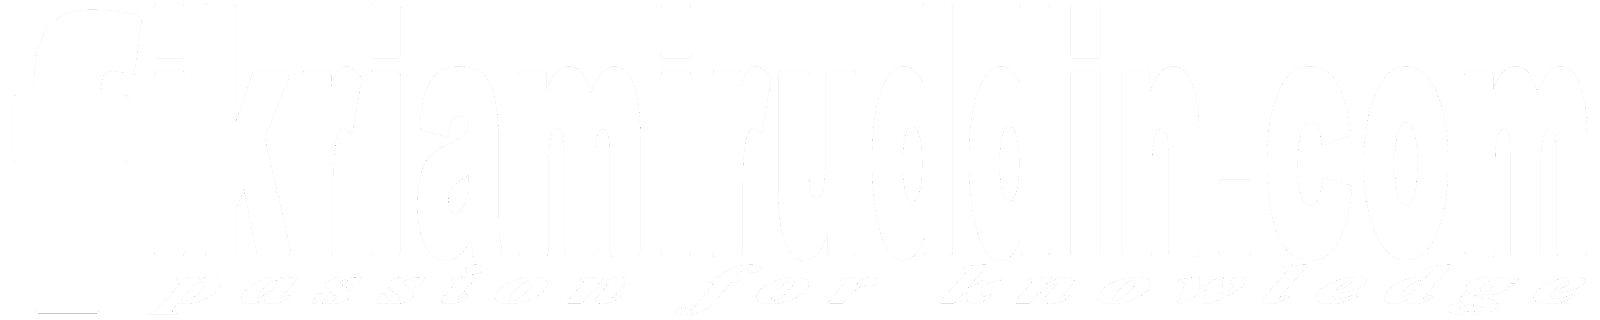 fikriamiruddin.com